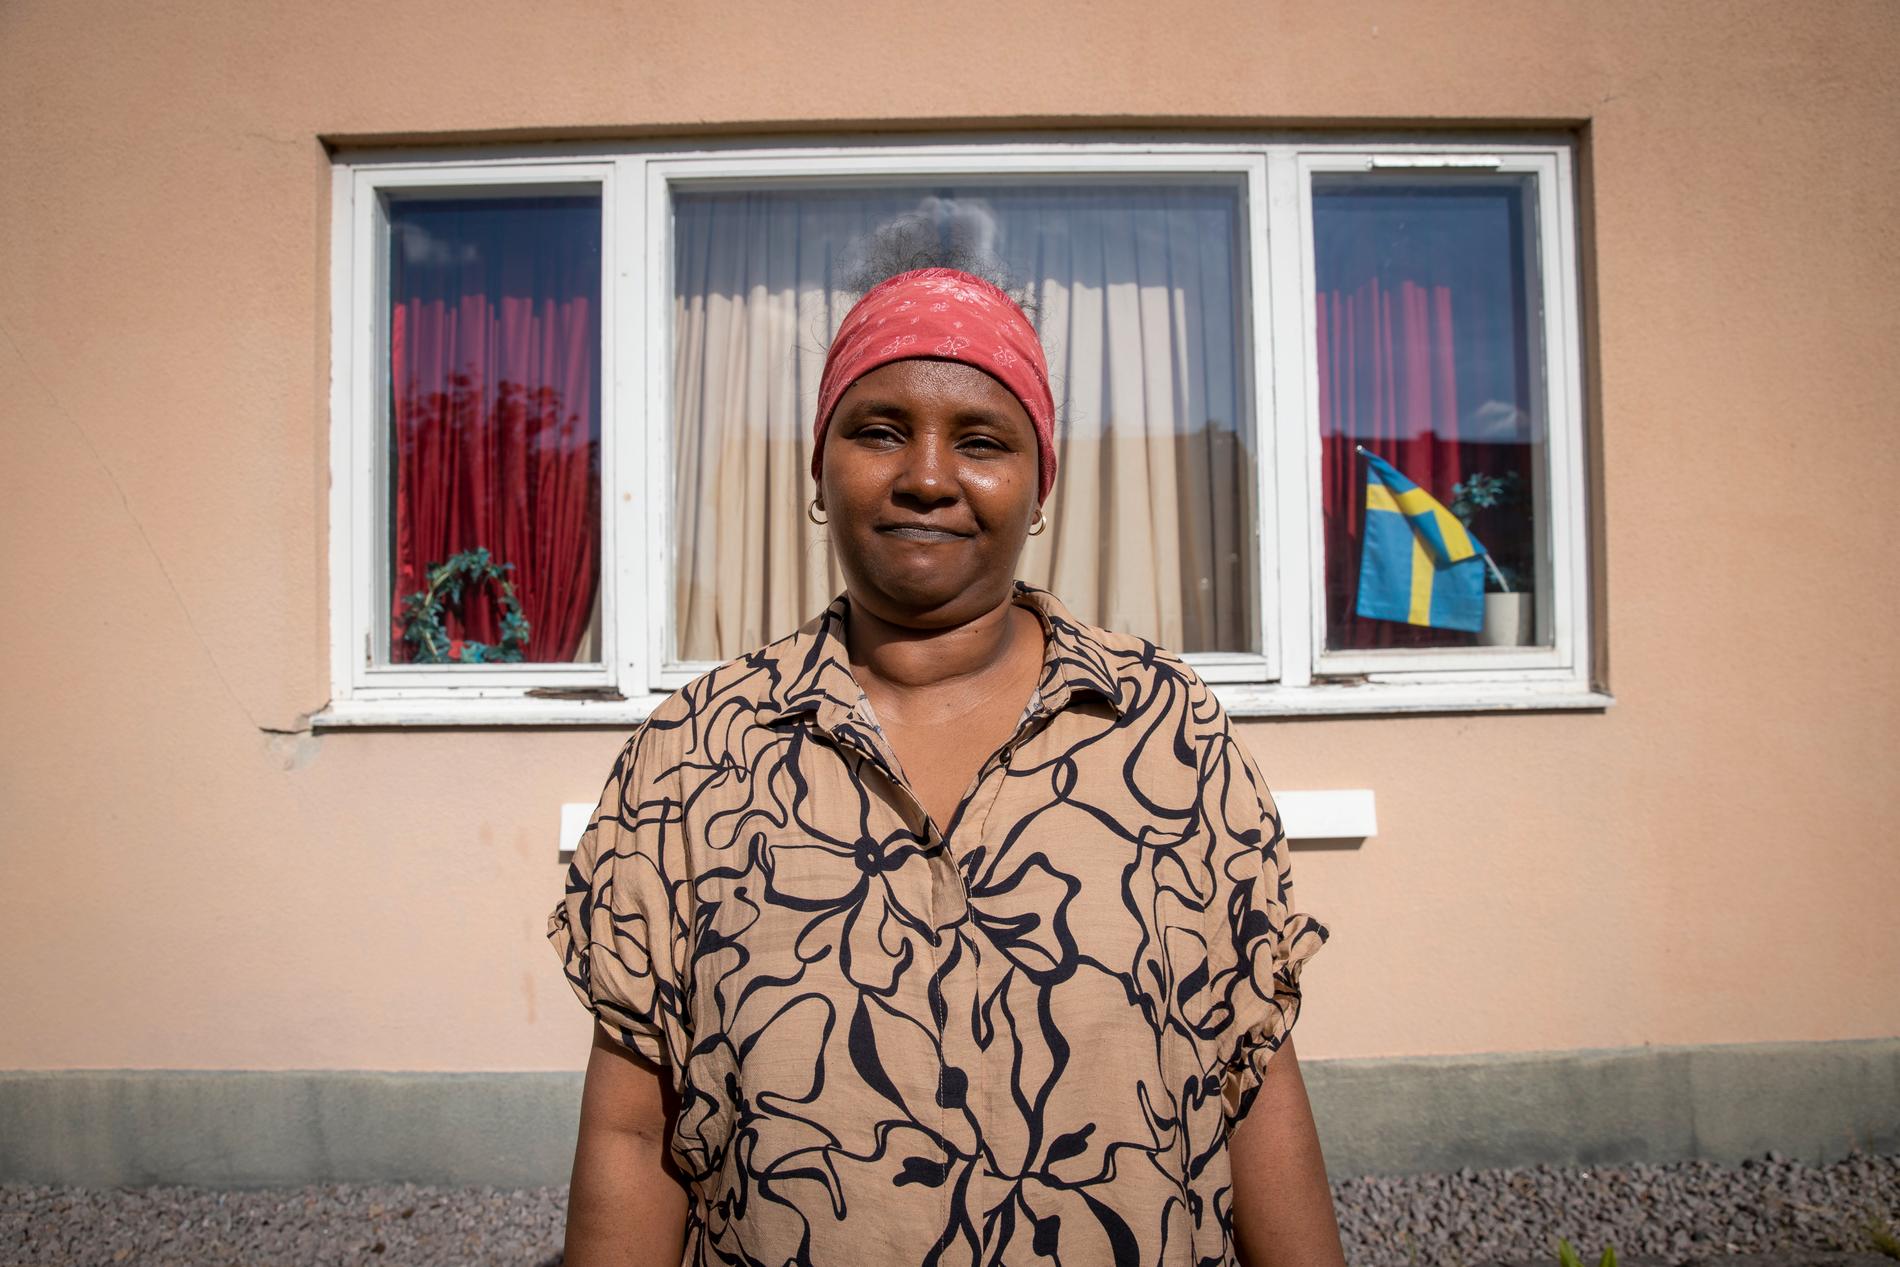 Tsega Heli, 39, bor i Ringen med sina fyra barn mellan 2 och 16 år. Hon tycker att det känns tråkigt att behöva flytta från Hanaskog. ”Jag tycker att det känns okej”, säger dottern Yodit. 